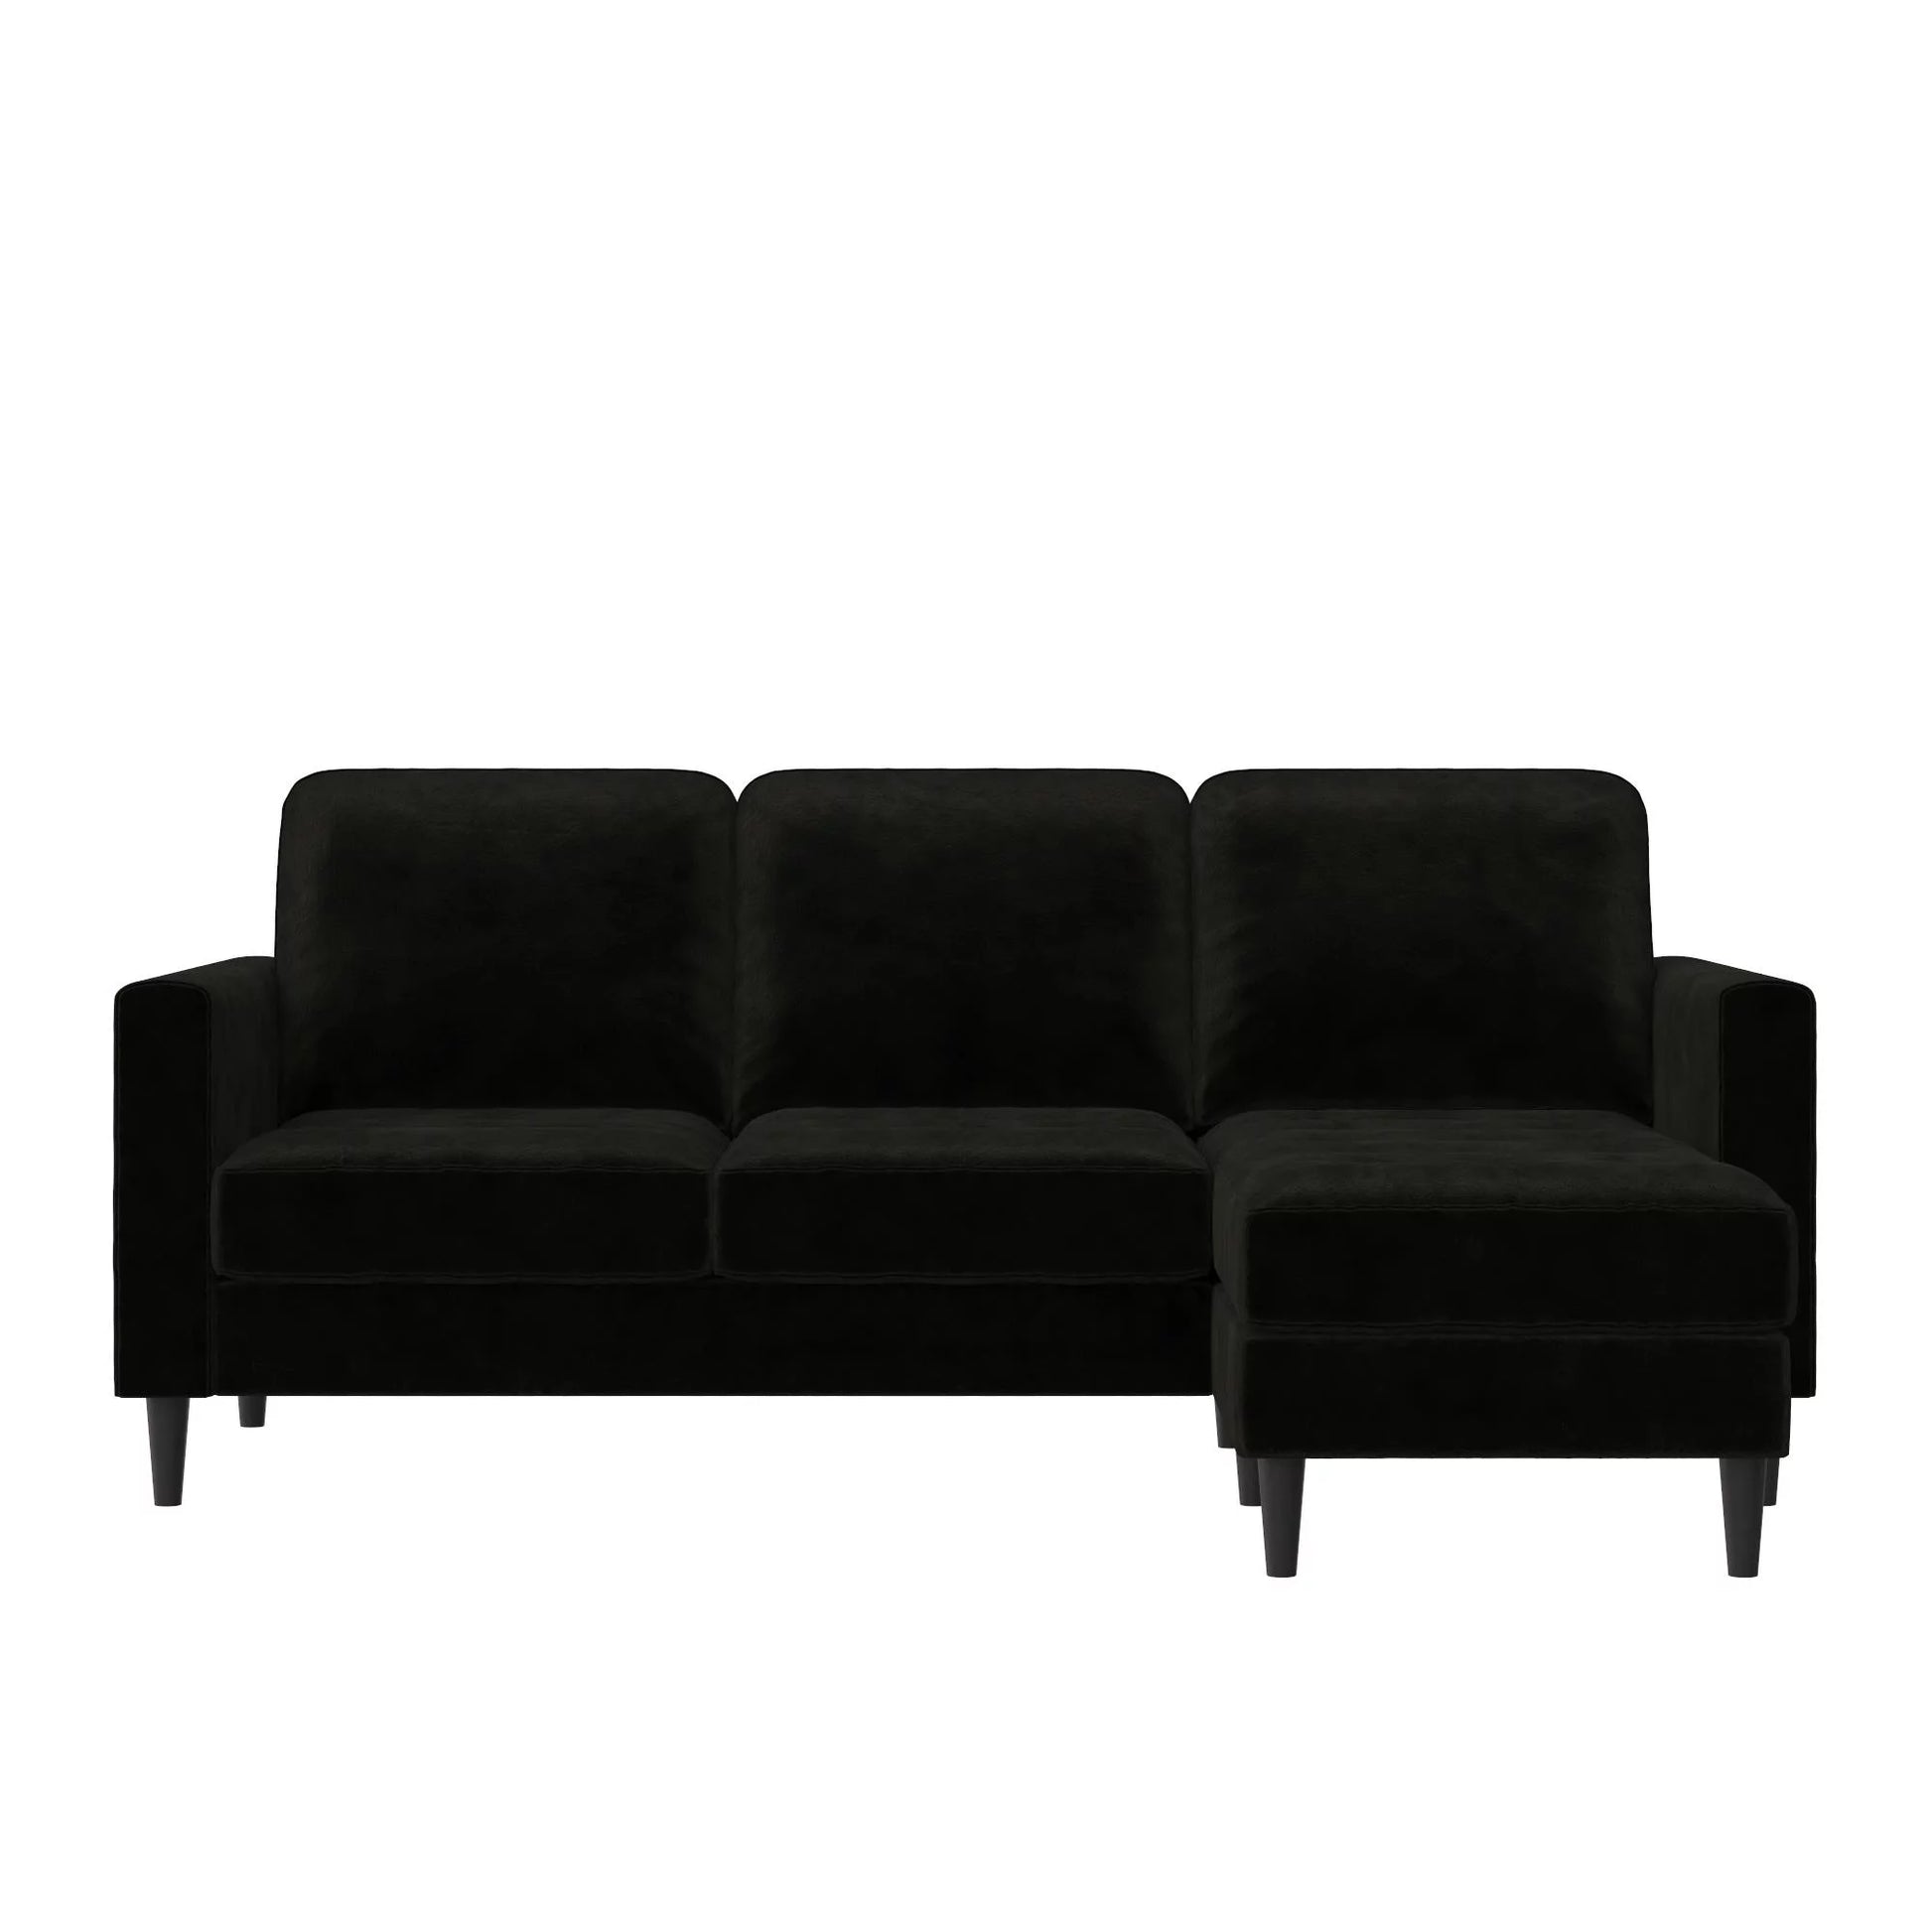 Cosmoliving Strummer Reversible Sectional Sofa Couch, Black Velvet